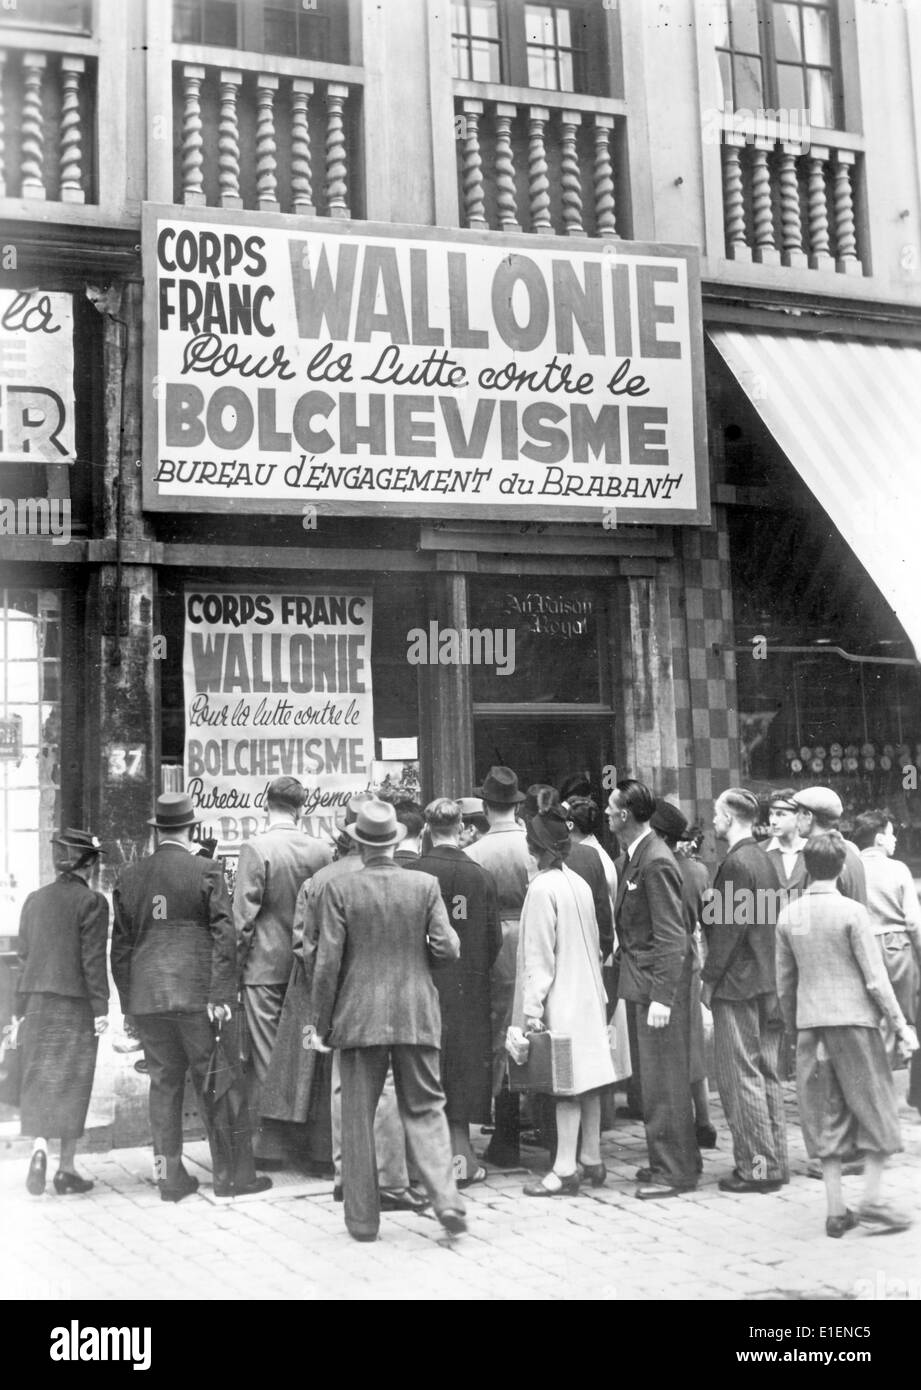 La photo d'un reportage nazi montre une couronne de personnes en dehors du bureau recrutant des hommes wallon pour le Waffen-SS allemand pour la «lutte contre le bolchevisme» le long du front est à Bruxelles, juillet 1941. Fotoarchiv für Zeitgeschichtee - PAS DE SERVICE DE FIL Banque D'Images